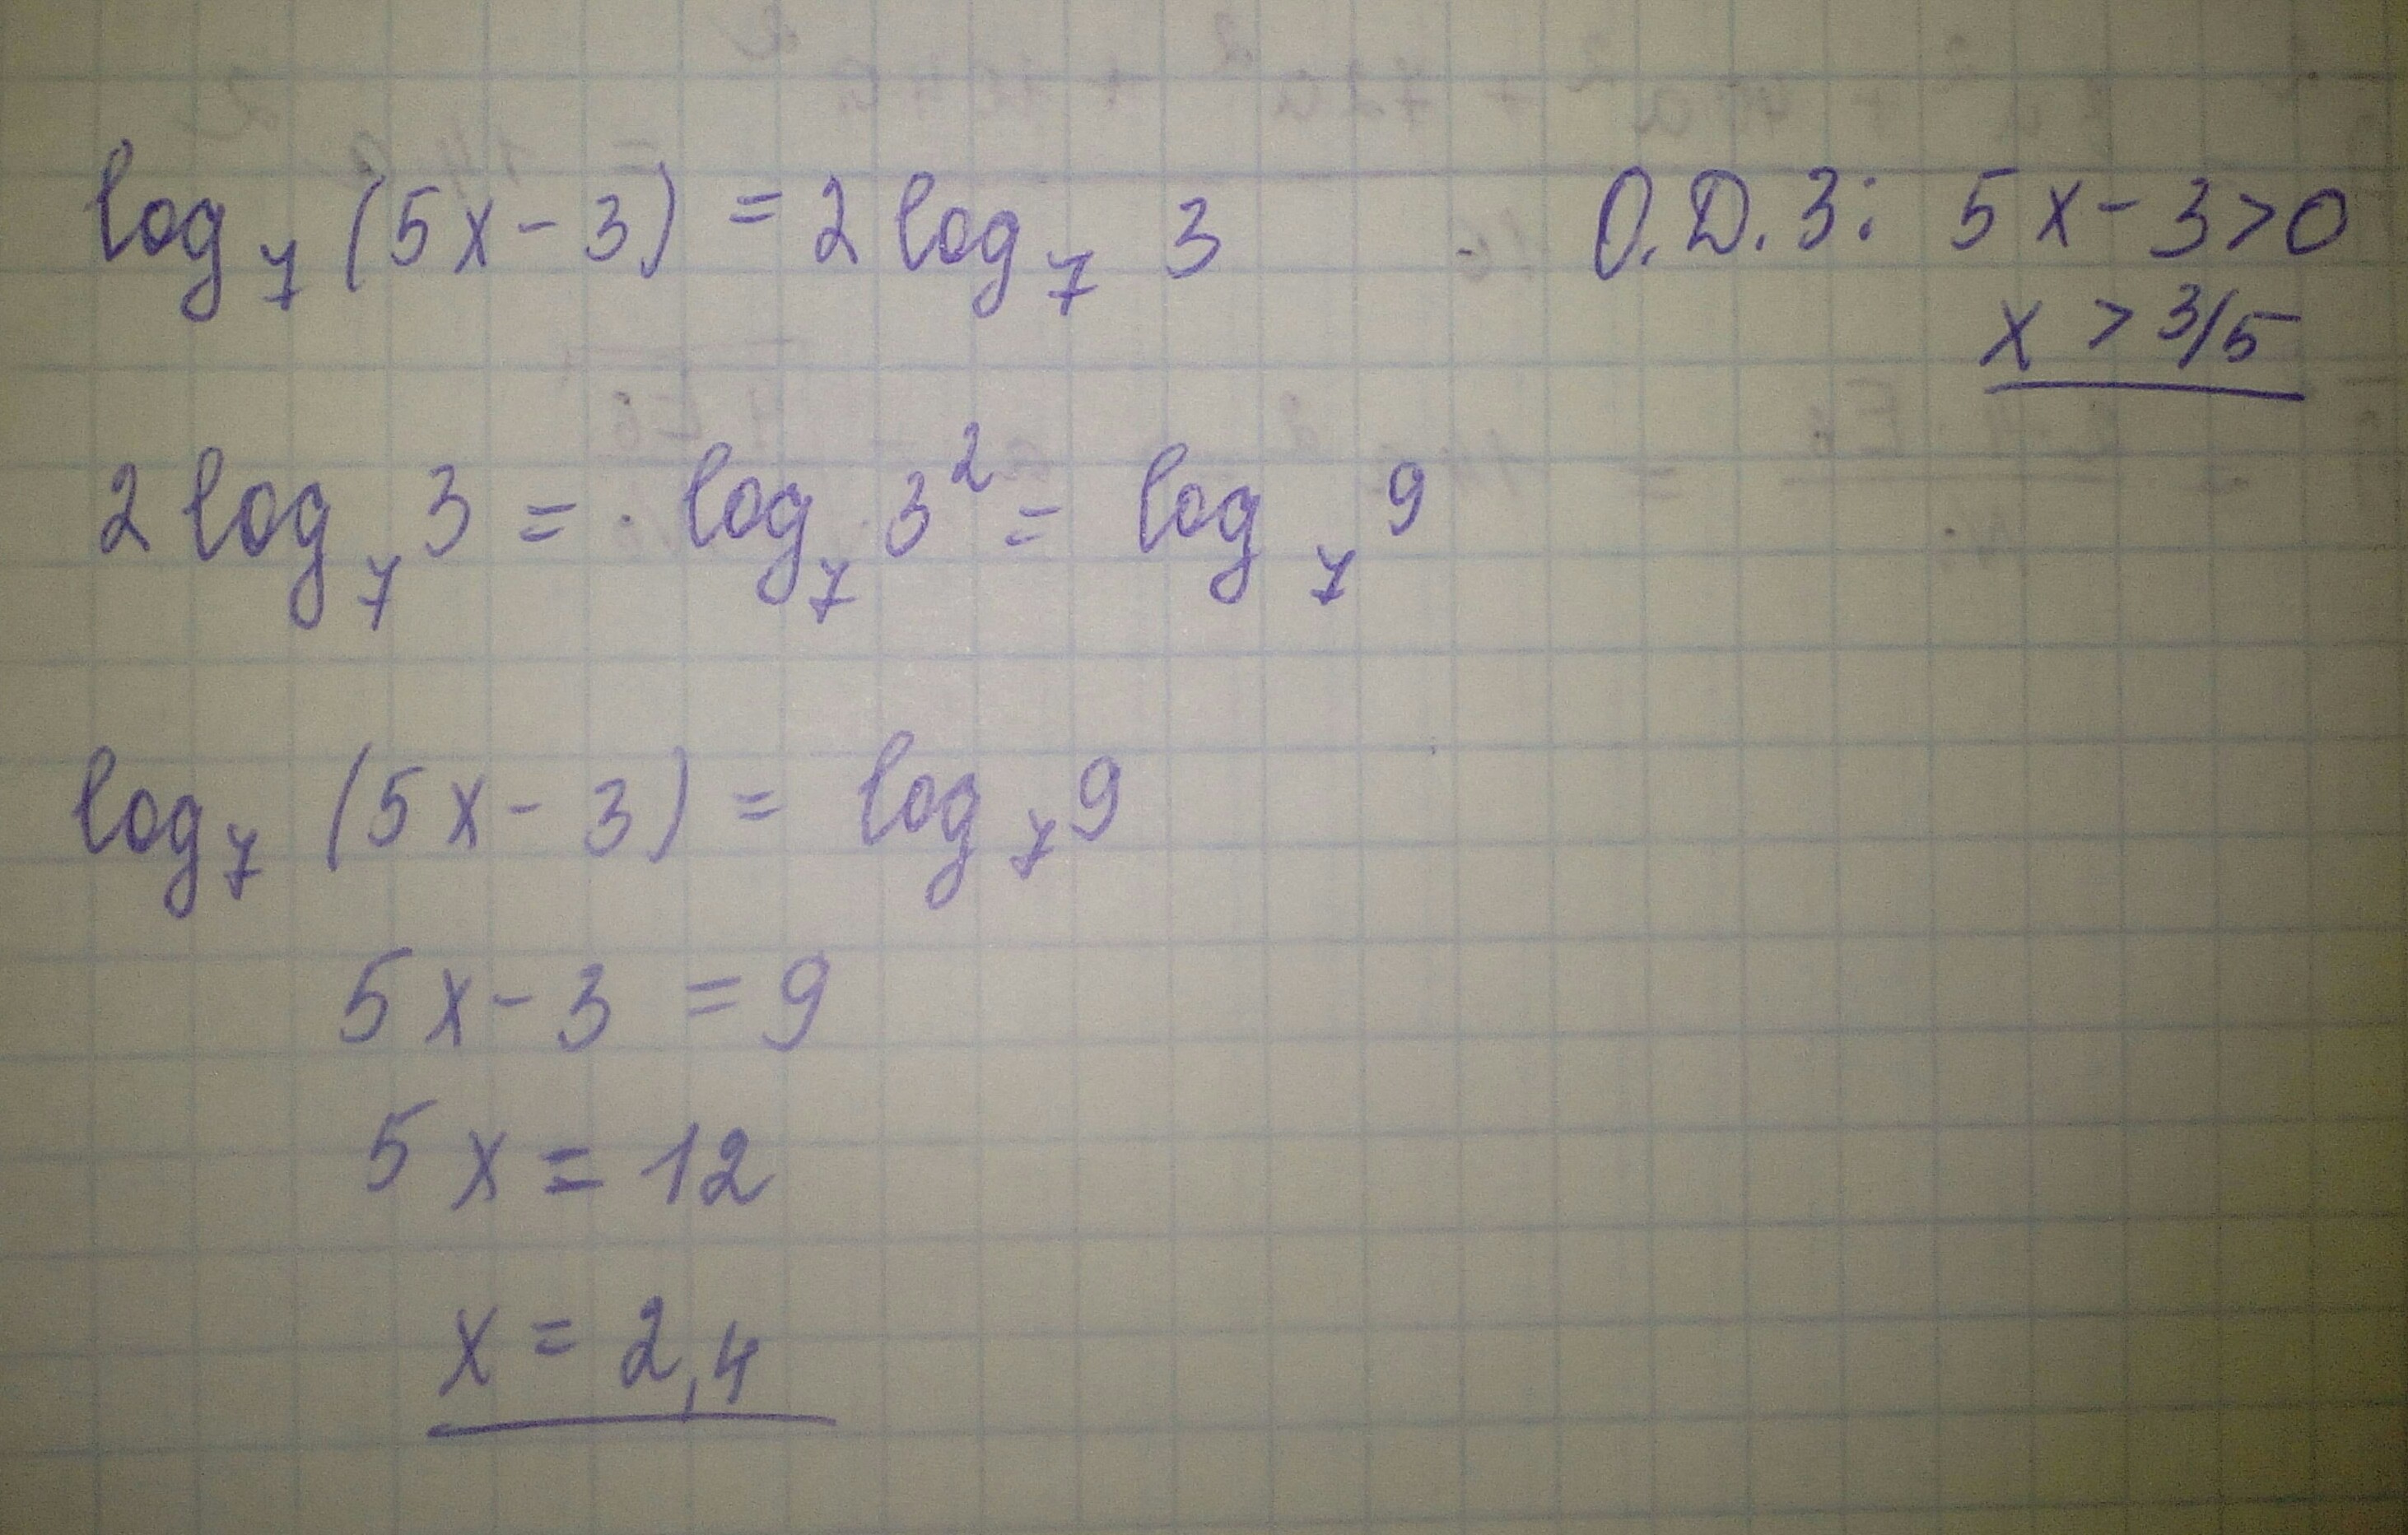 Корень x 3 5 7x. Найдите корни уравнения log5 (x-1)=2. Найдите корень уравнения Лог. Log(2)(x^2-5)*(log(3)(7-x))^2+3*log(2)(x^2-5)-log(3)(7-x)-6=0. Найдите корень уравнения log4 2 5x+7 3.